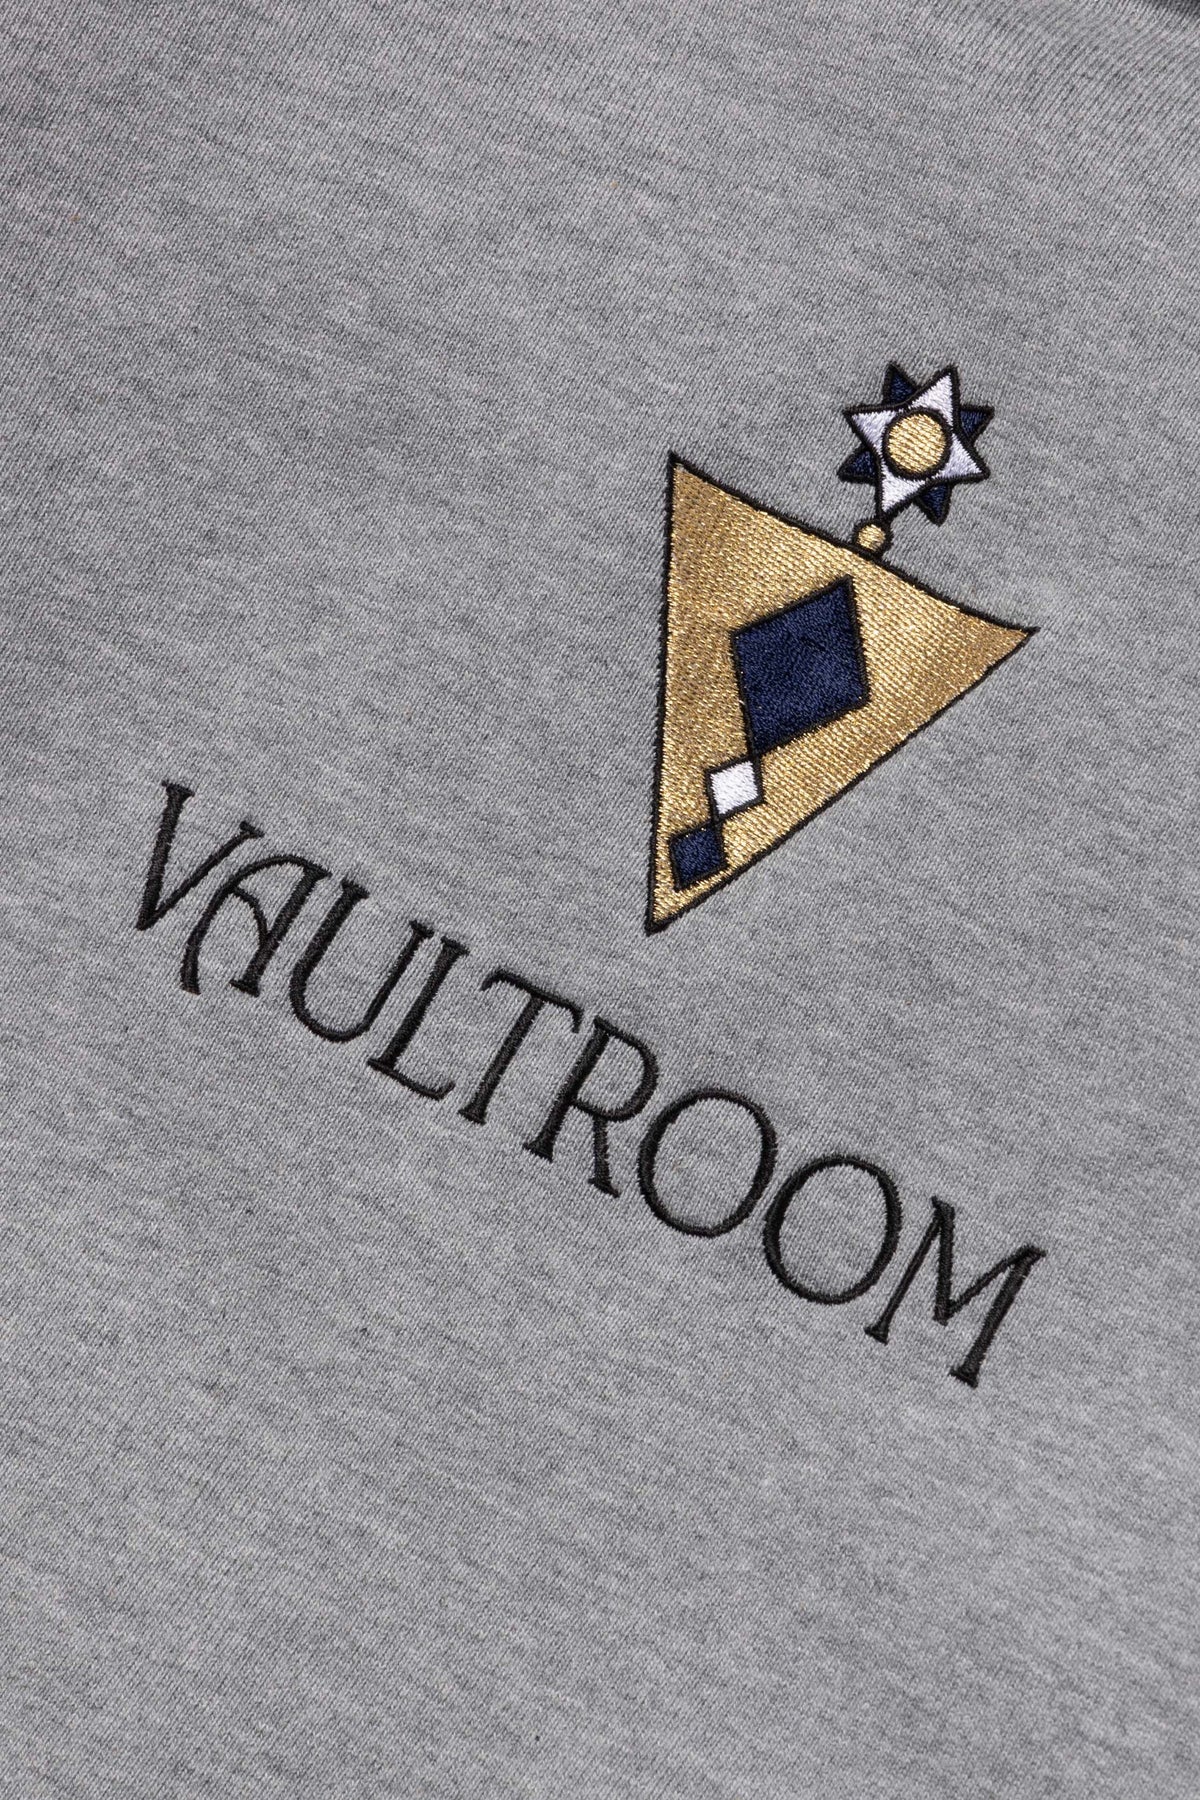 vaultroomVR × IBRAHIM HOODIE / GRY